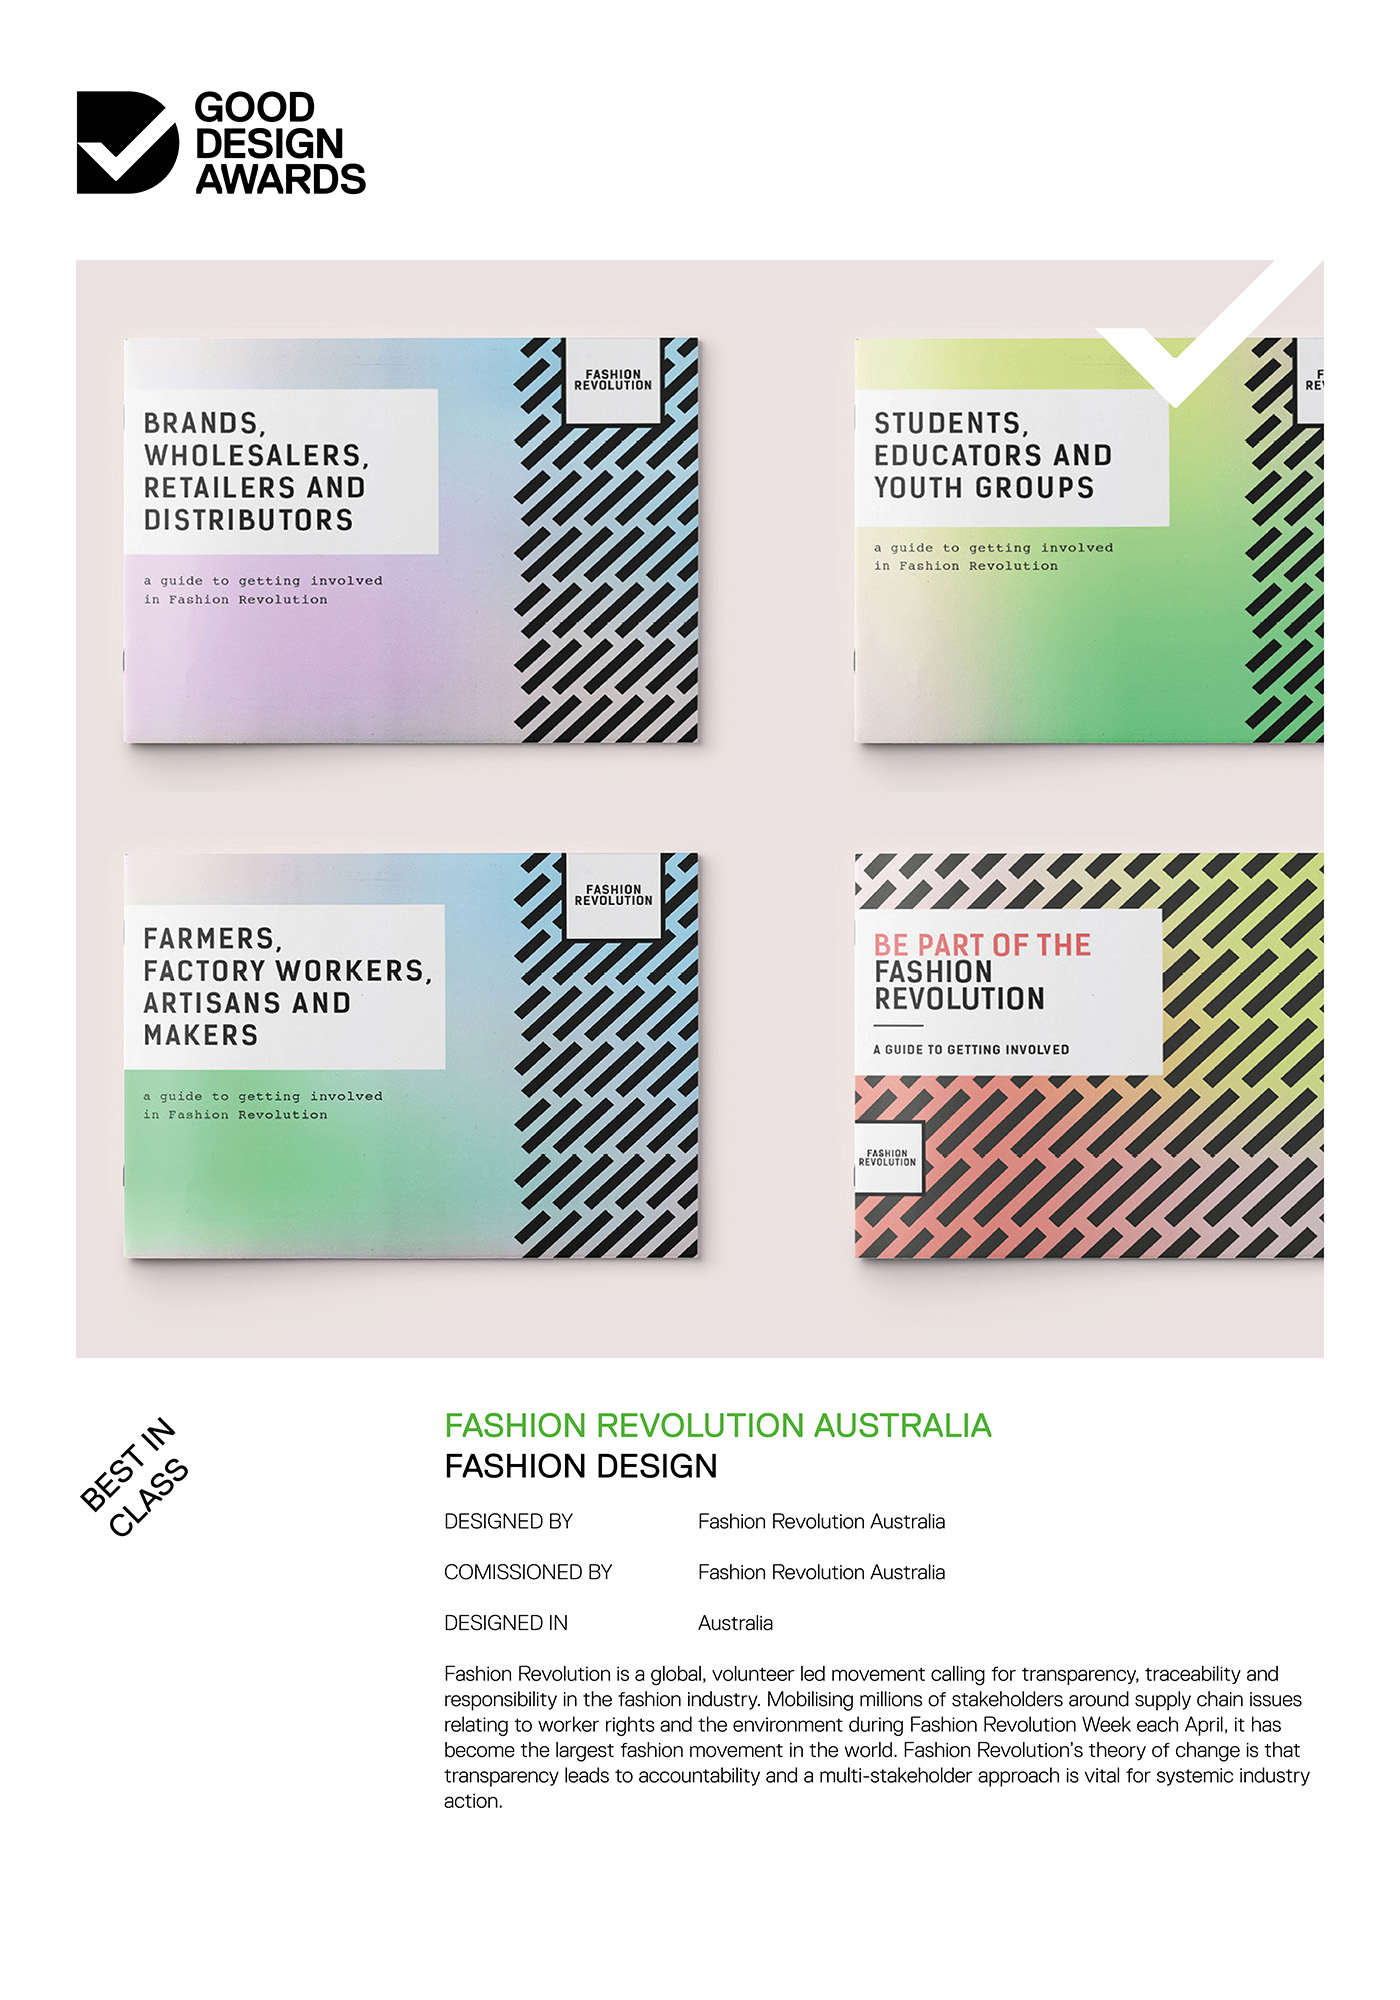 Fashion Revolution Australia